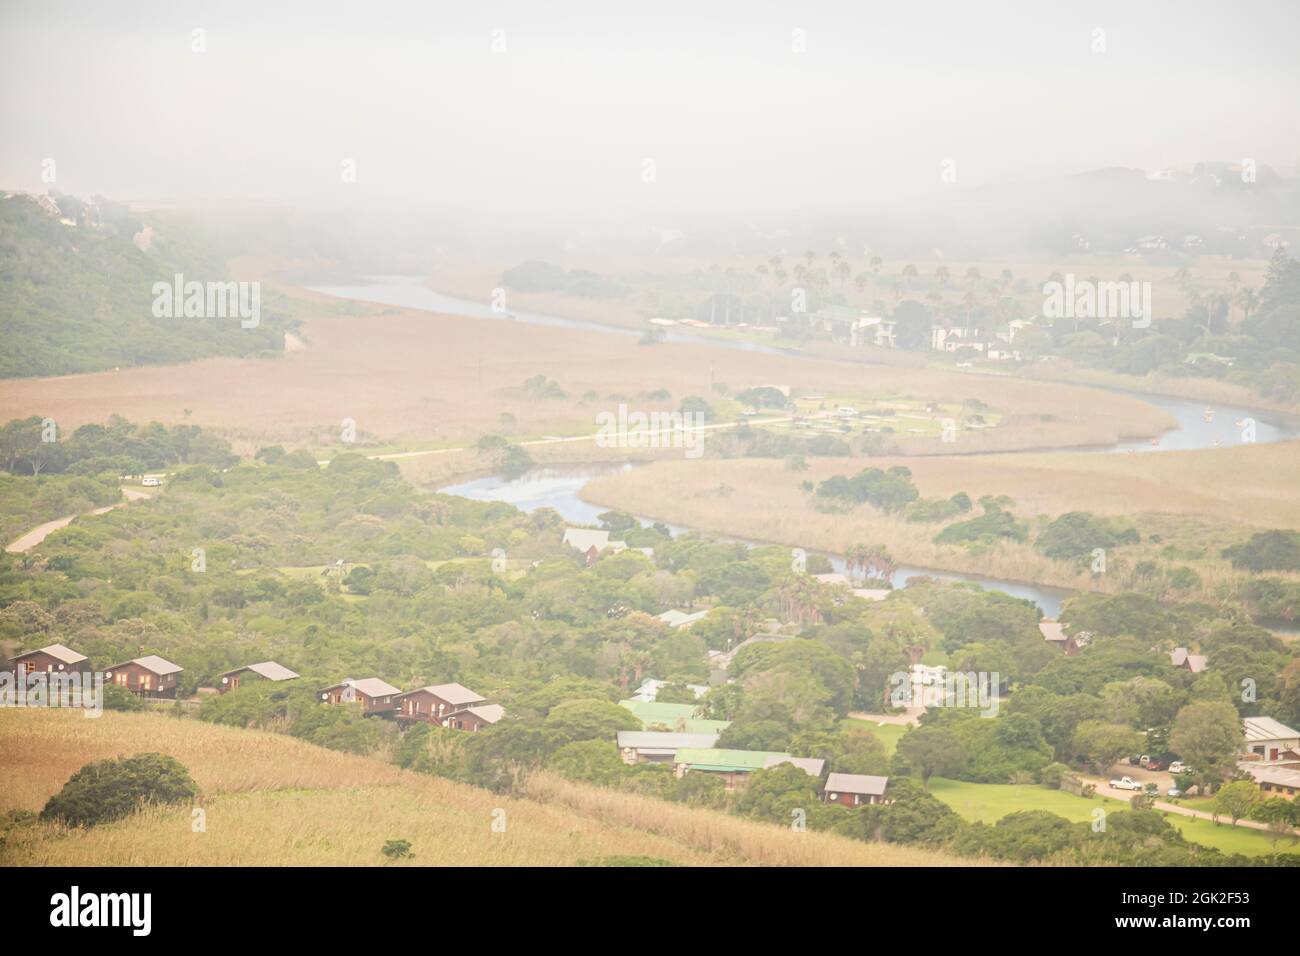 La vue brumeuse de l'endroit appelé Wilderness le long de la route des jardins à l'ouest du Cap, en Afrique du Sud. Banque D'Images